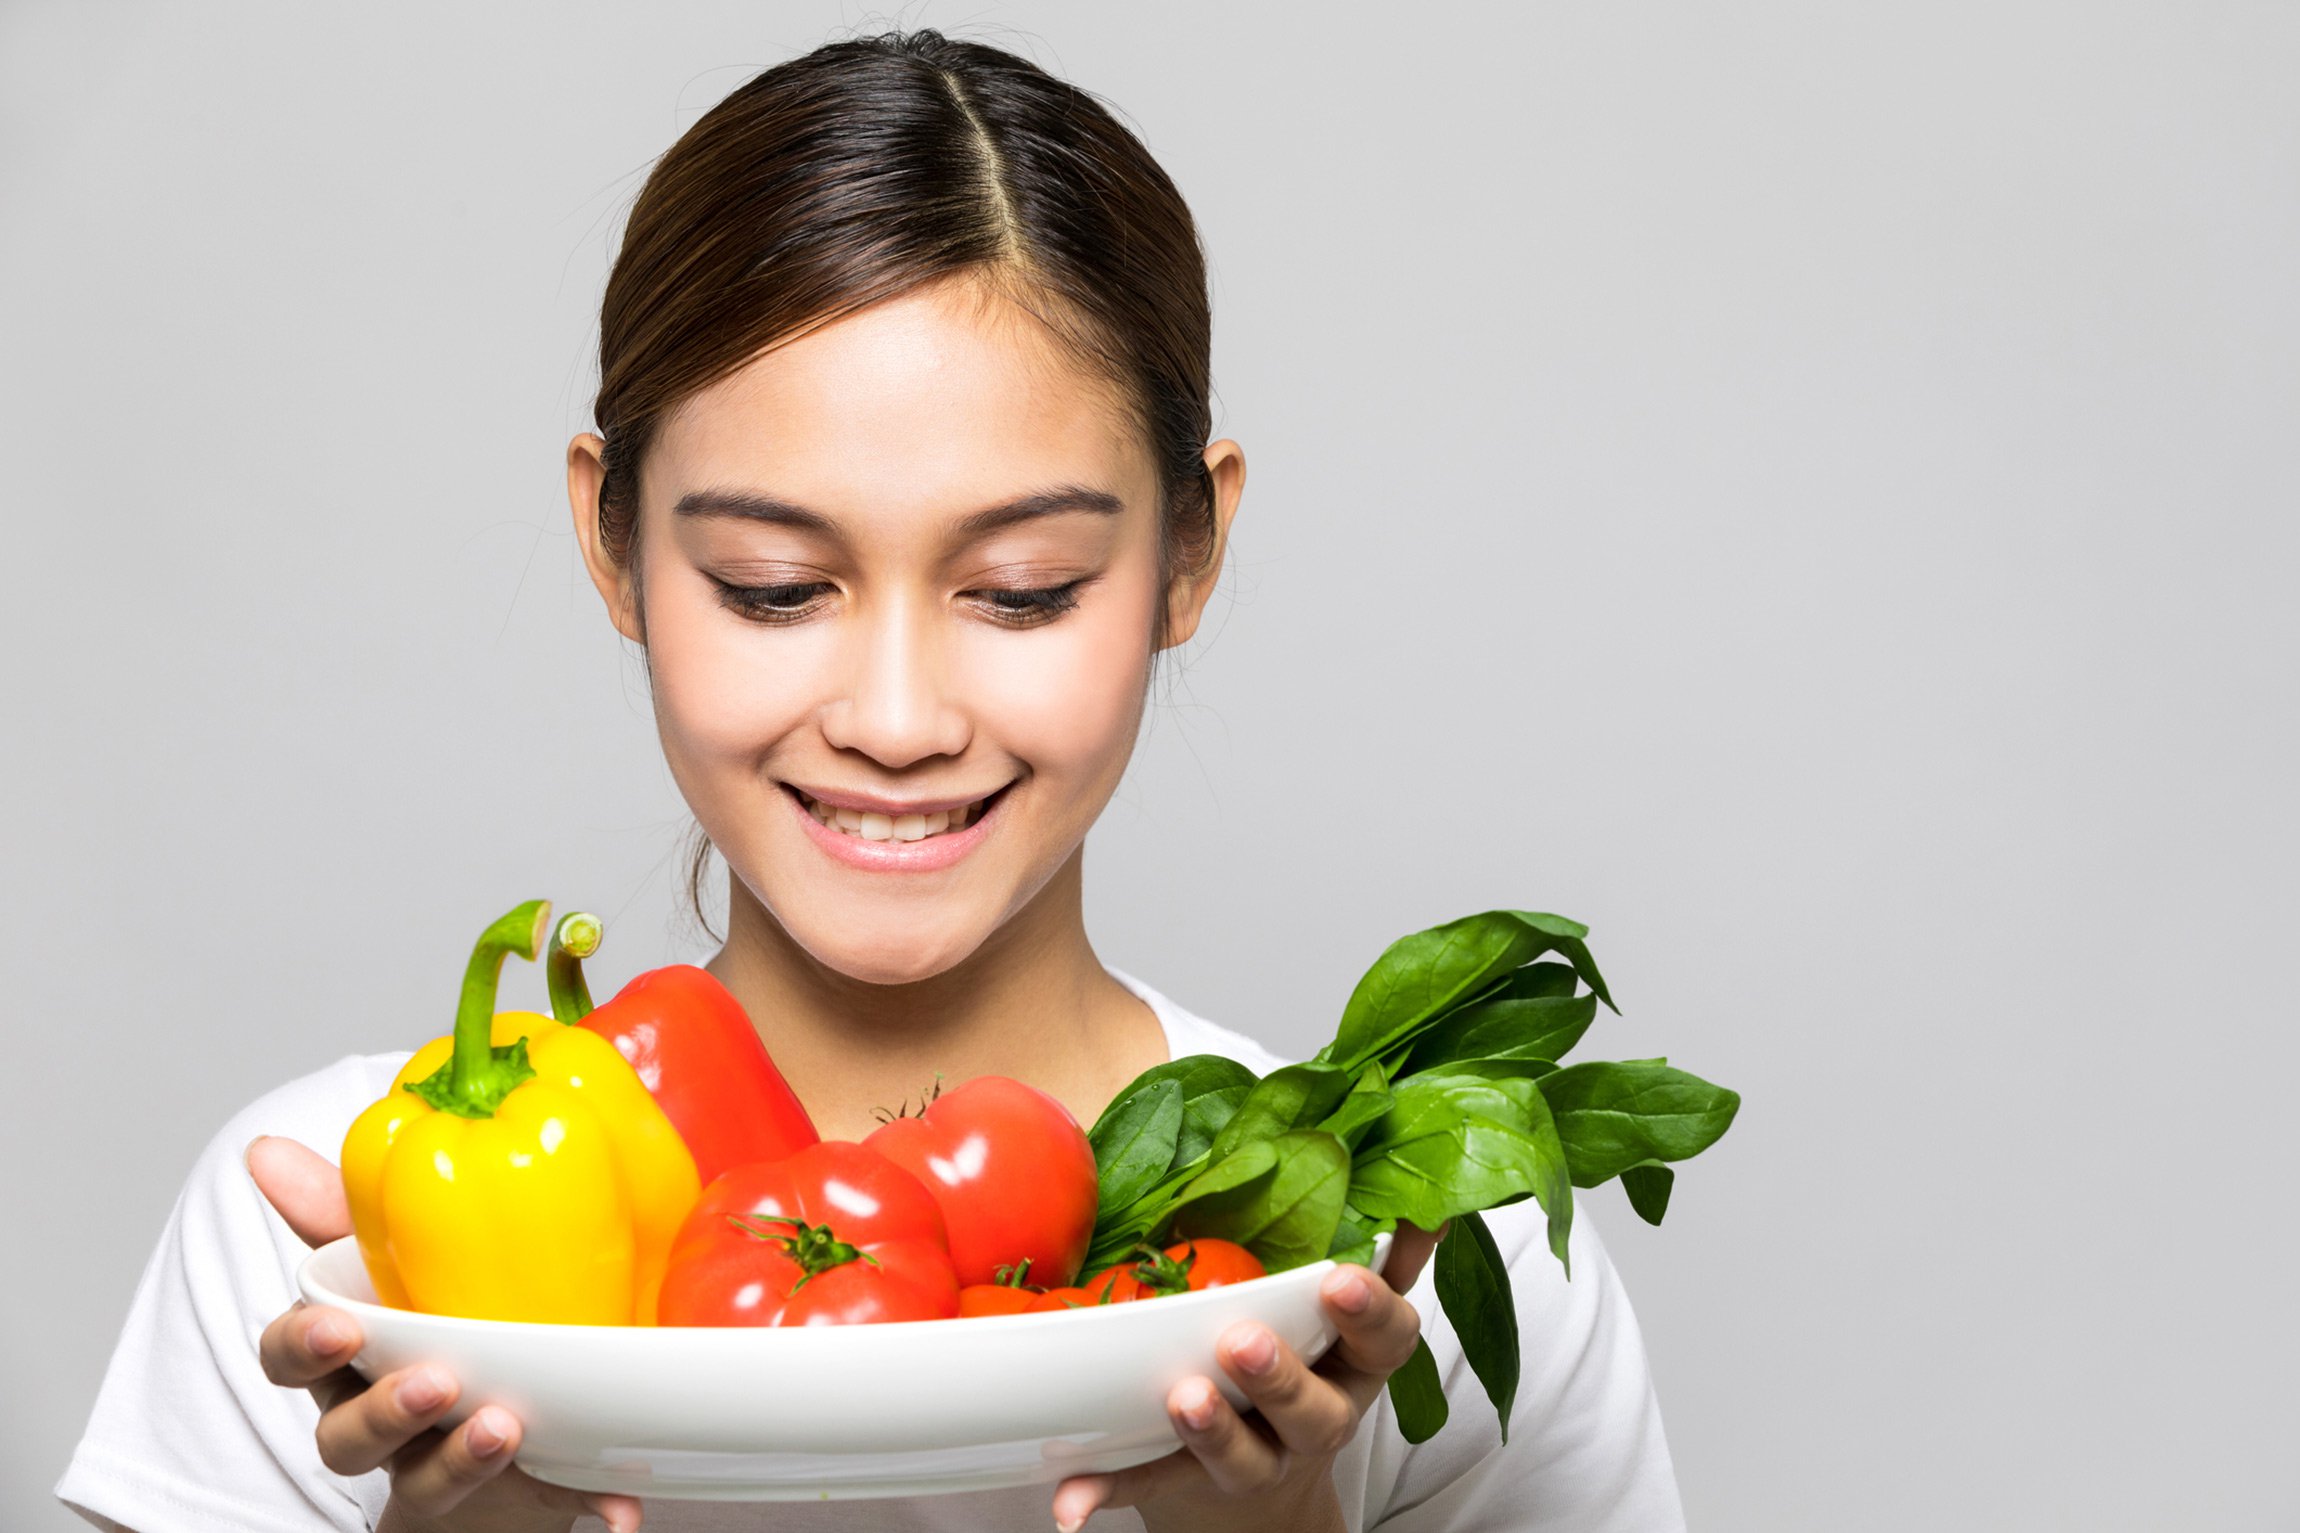 4 einfache Tipps, um Juckreiz aufgrund von Lebensmitteln zu verhindern